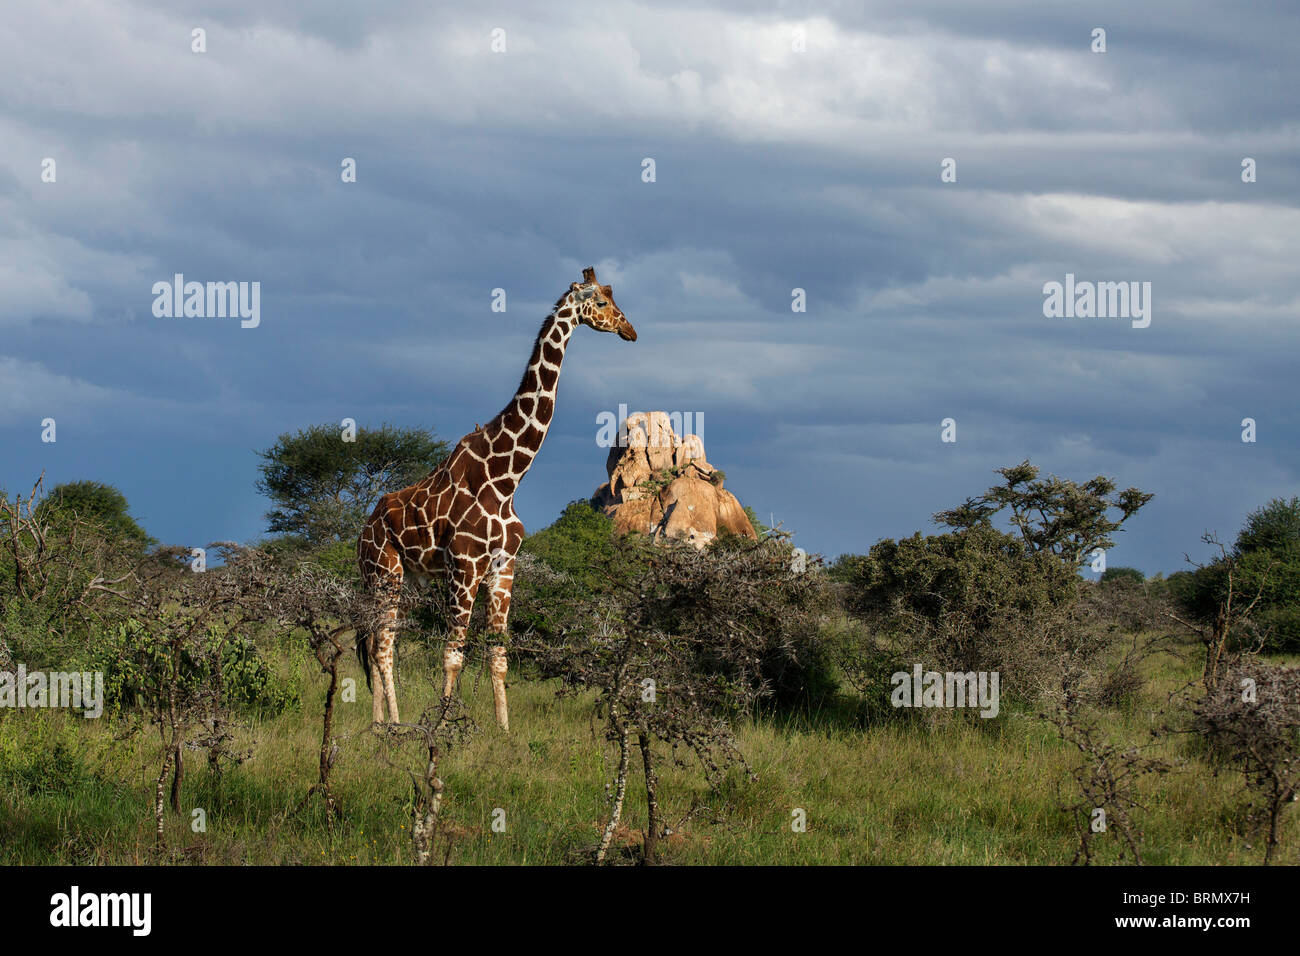 Jirafa reticulada macho (Giraffa camelopardalis reticulata) de pie en las praderas abiertas con nubes de tormenta recopilación Foto de stock